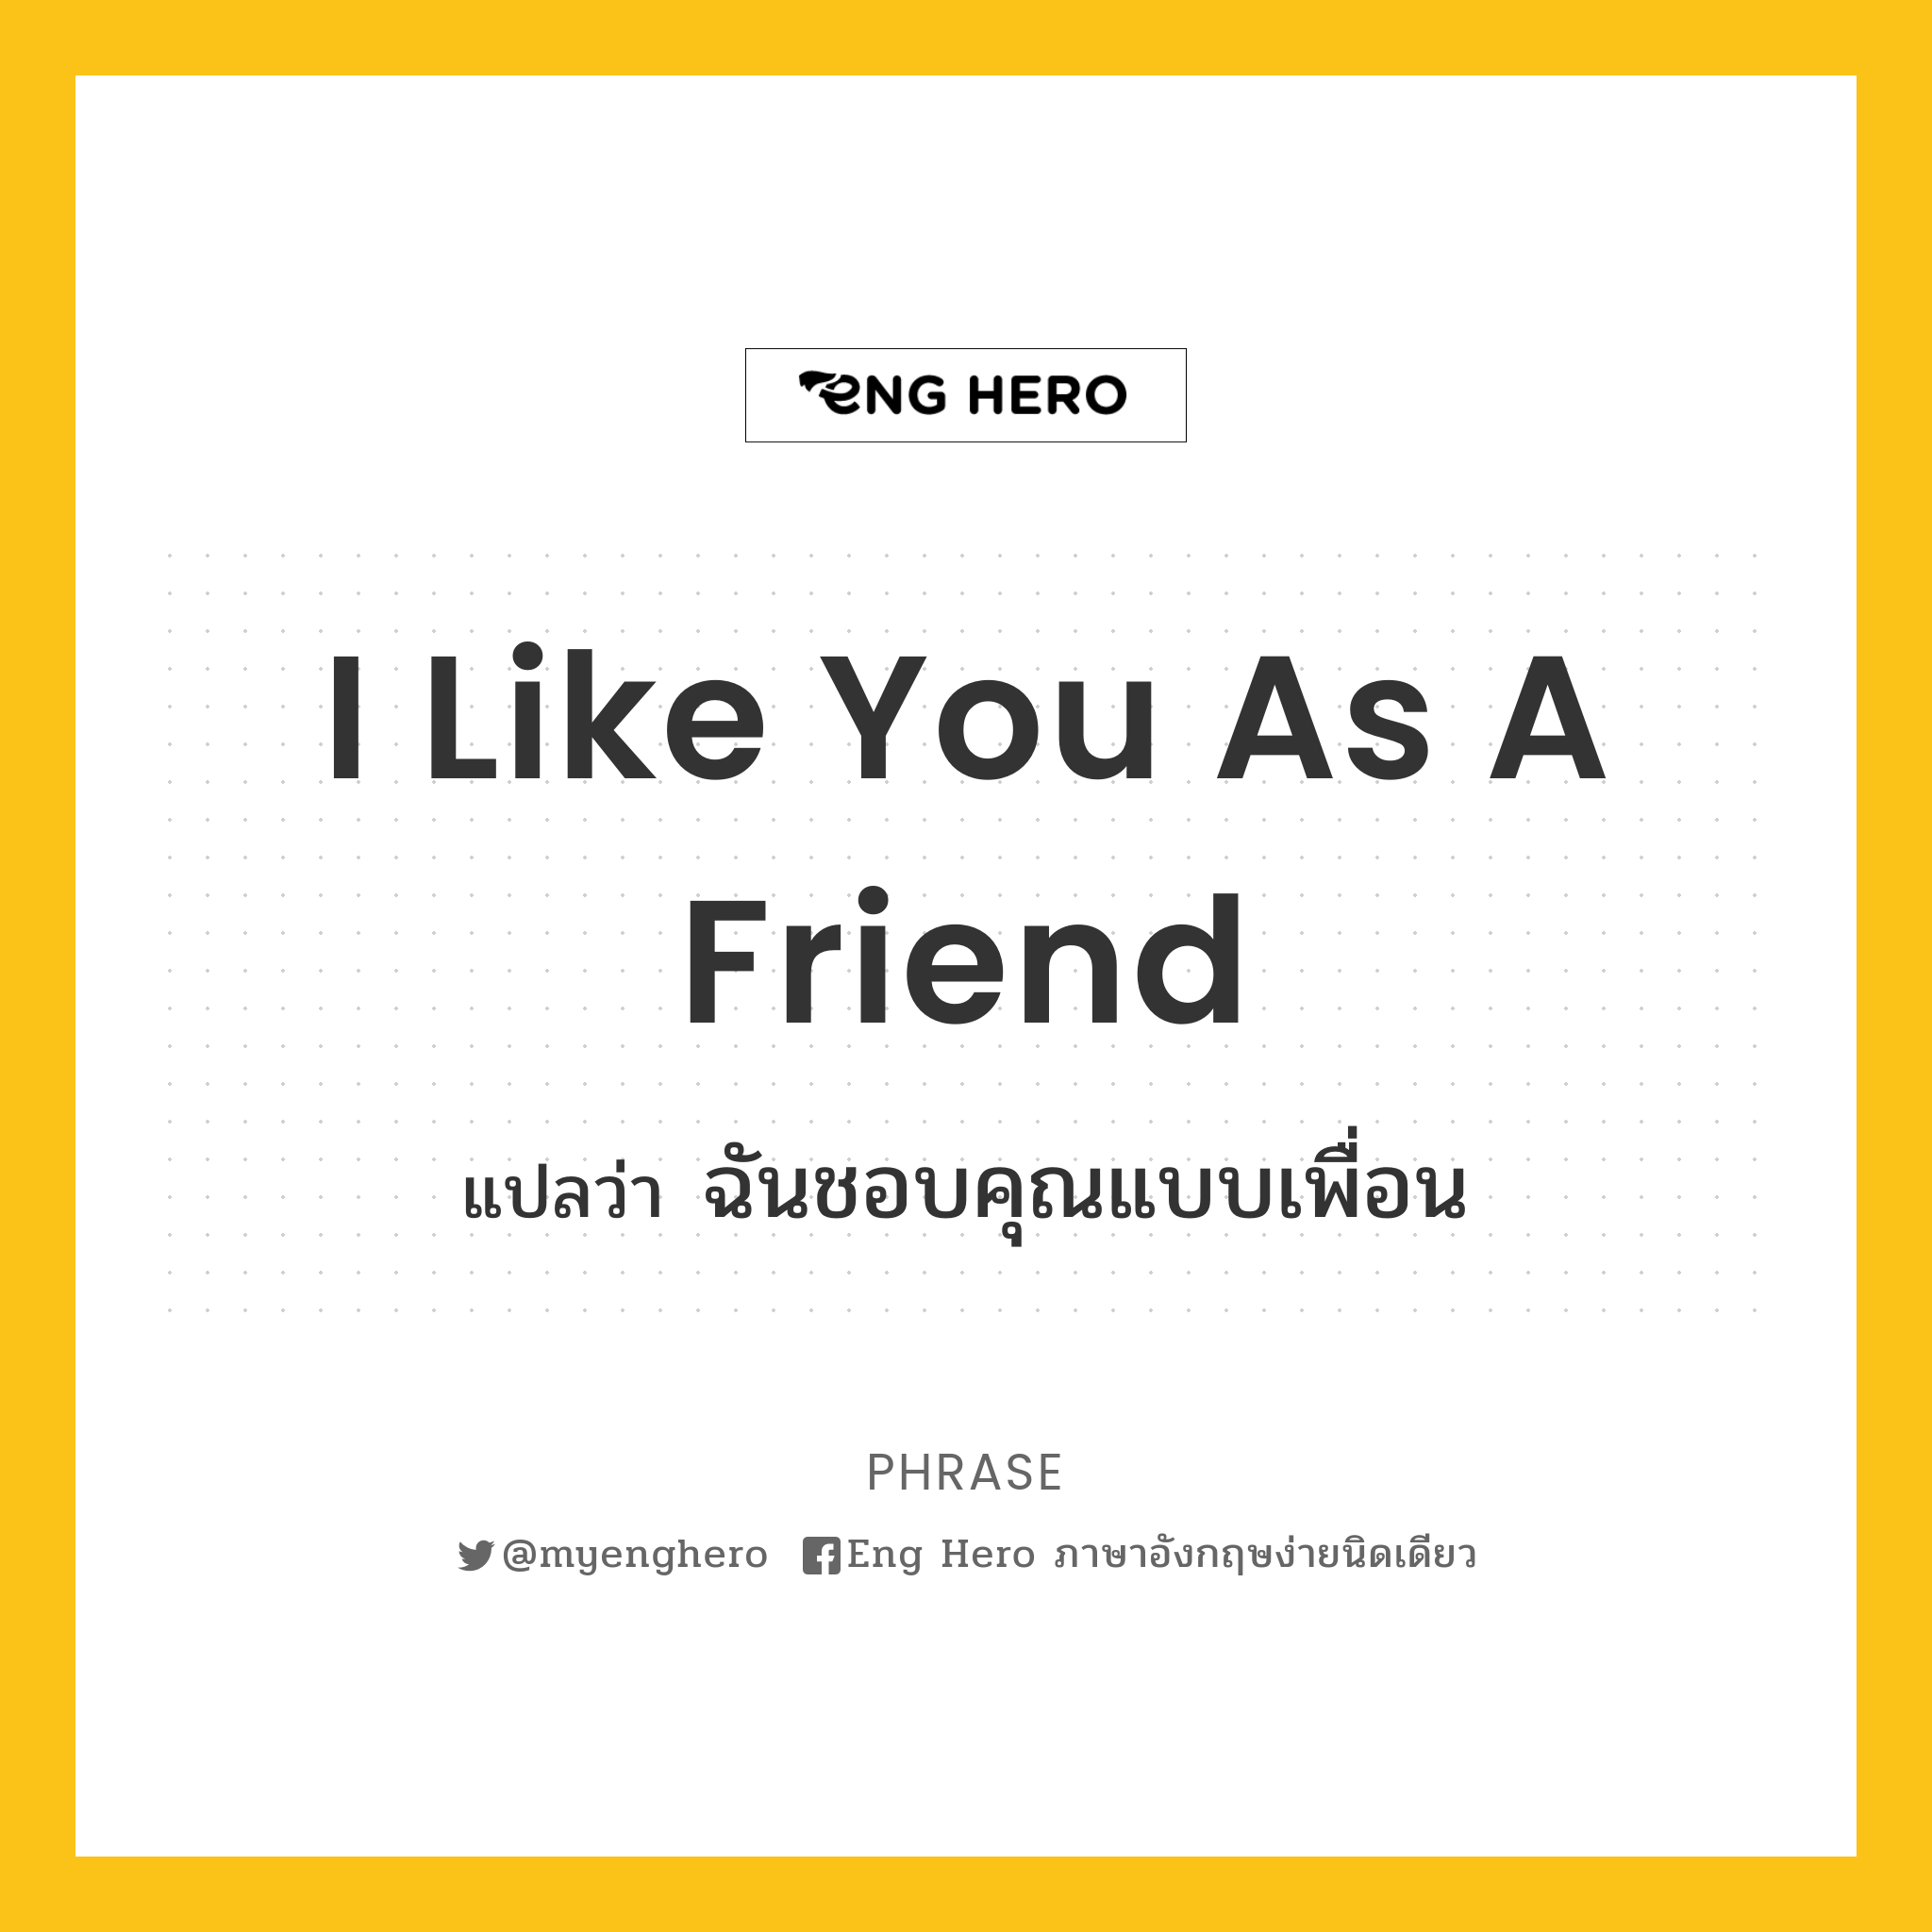 I Like You As A Friend แปลว่า ฉันชอบคุณแบบเพื่อน | Eng Hero เรียนภาษาอังกฤษ  ออนไลน์ ฟรี